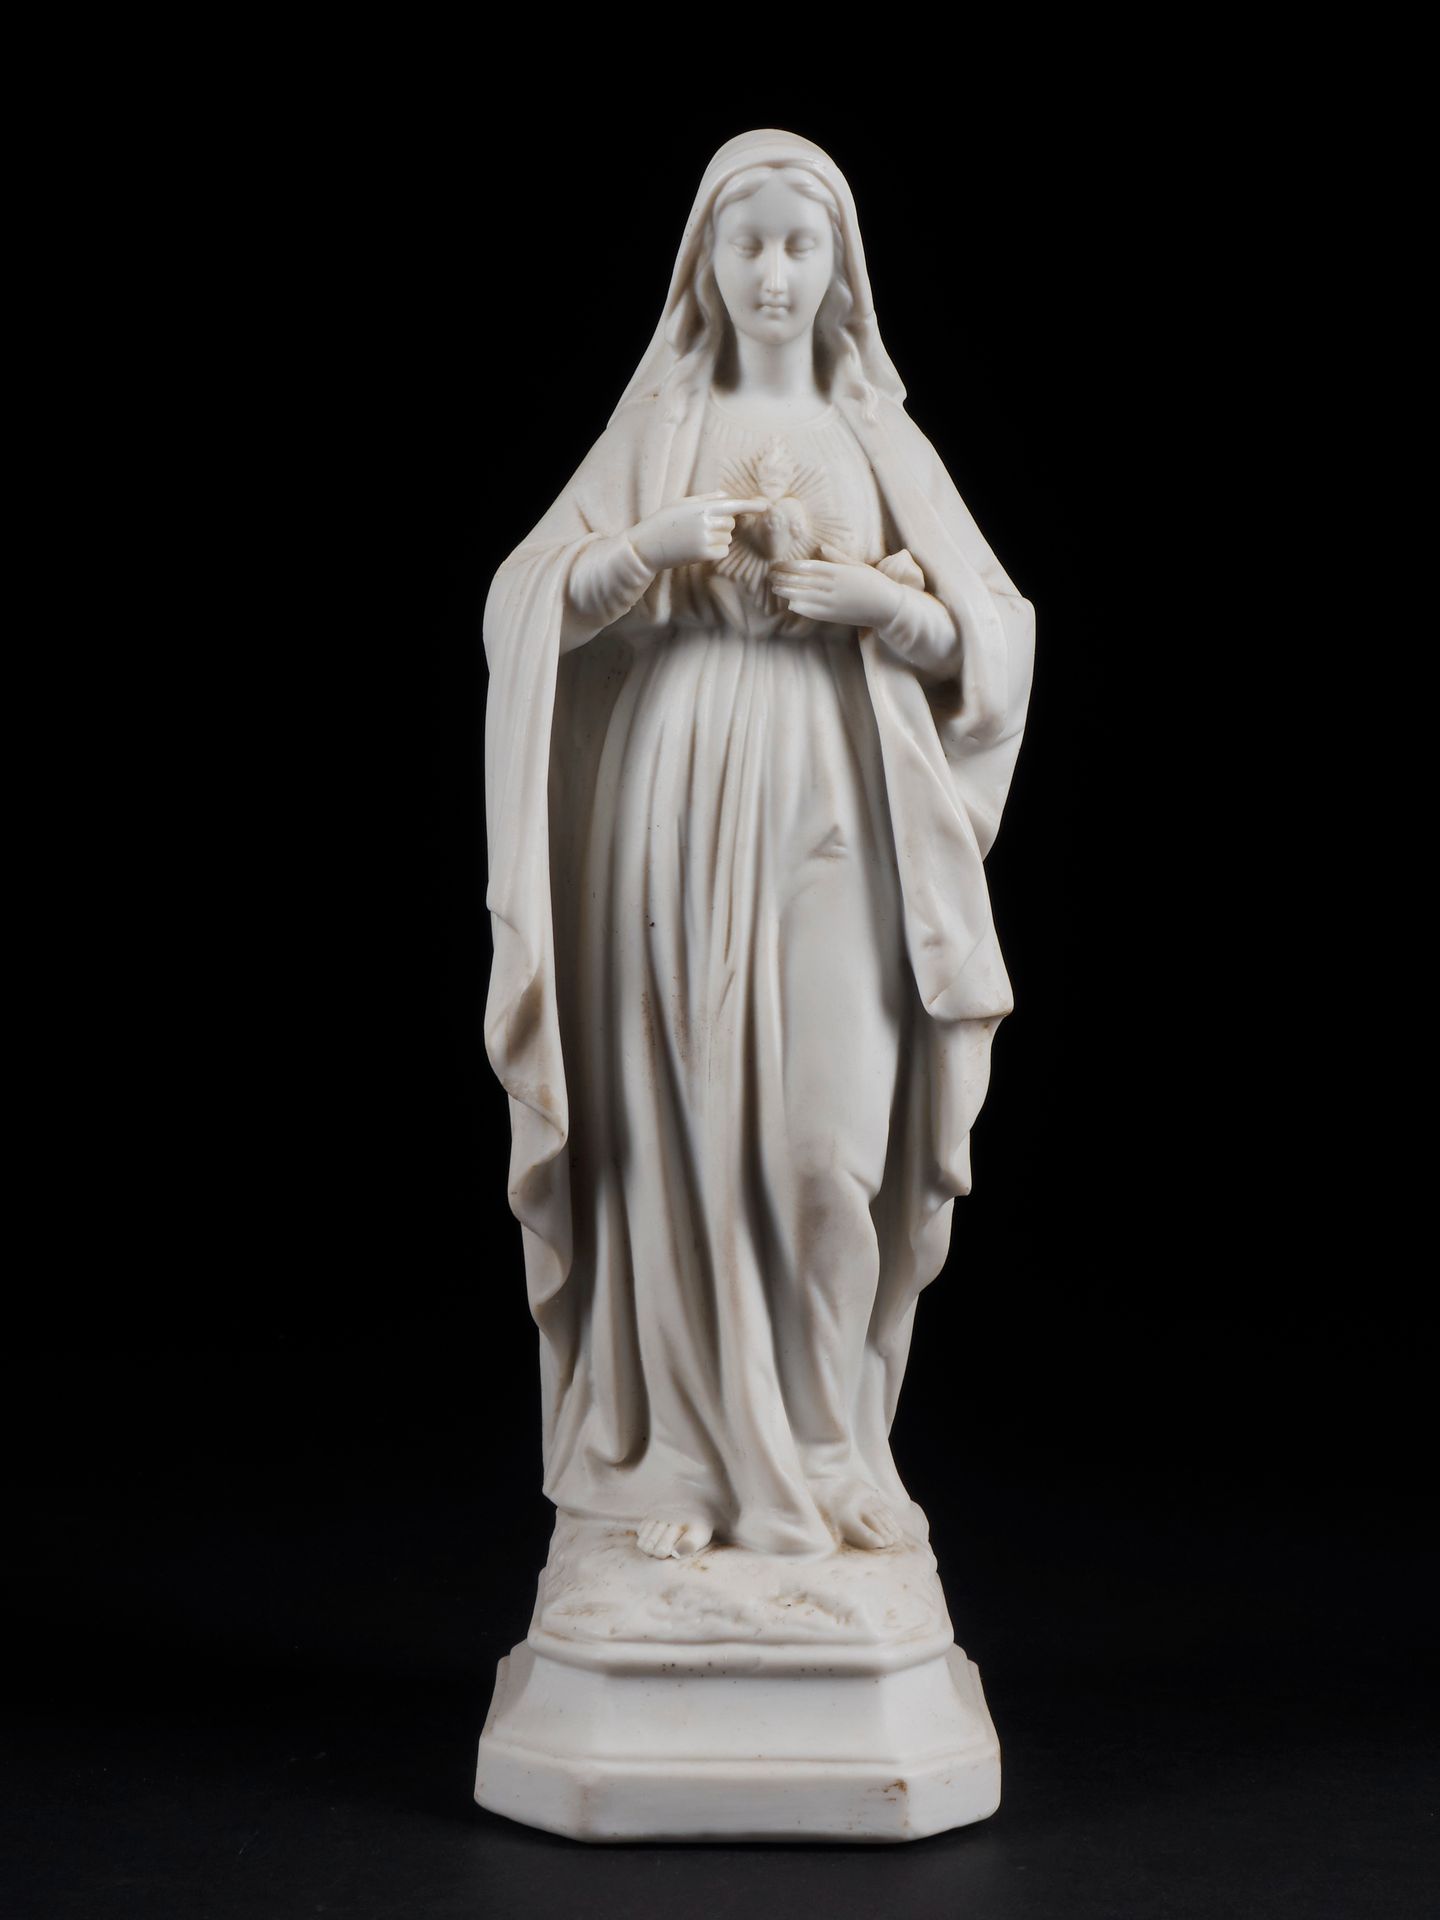 Null Elegante estatua devocional de María. Objeto de colección religiosa